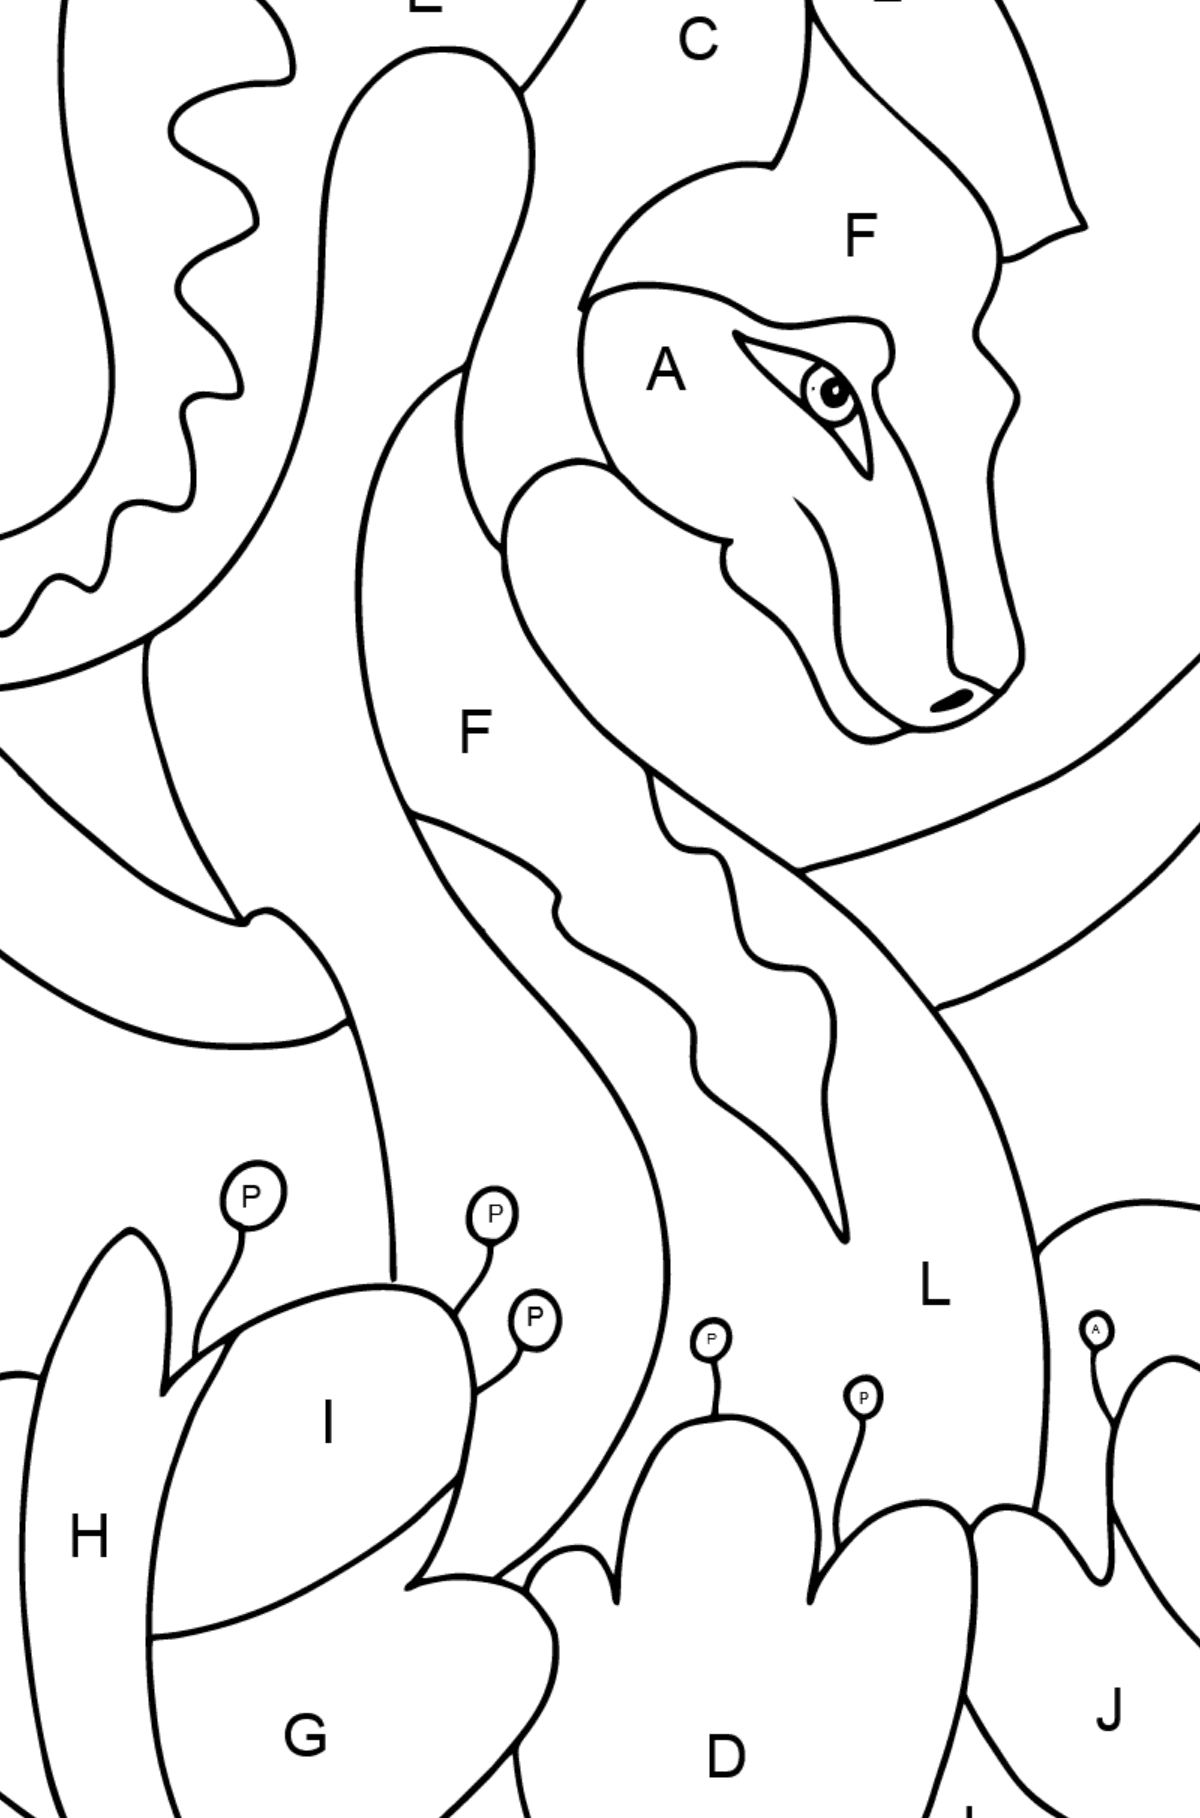 Dibujo para colorear dragón colorido (difícil) - Colorear por Letras para Niños